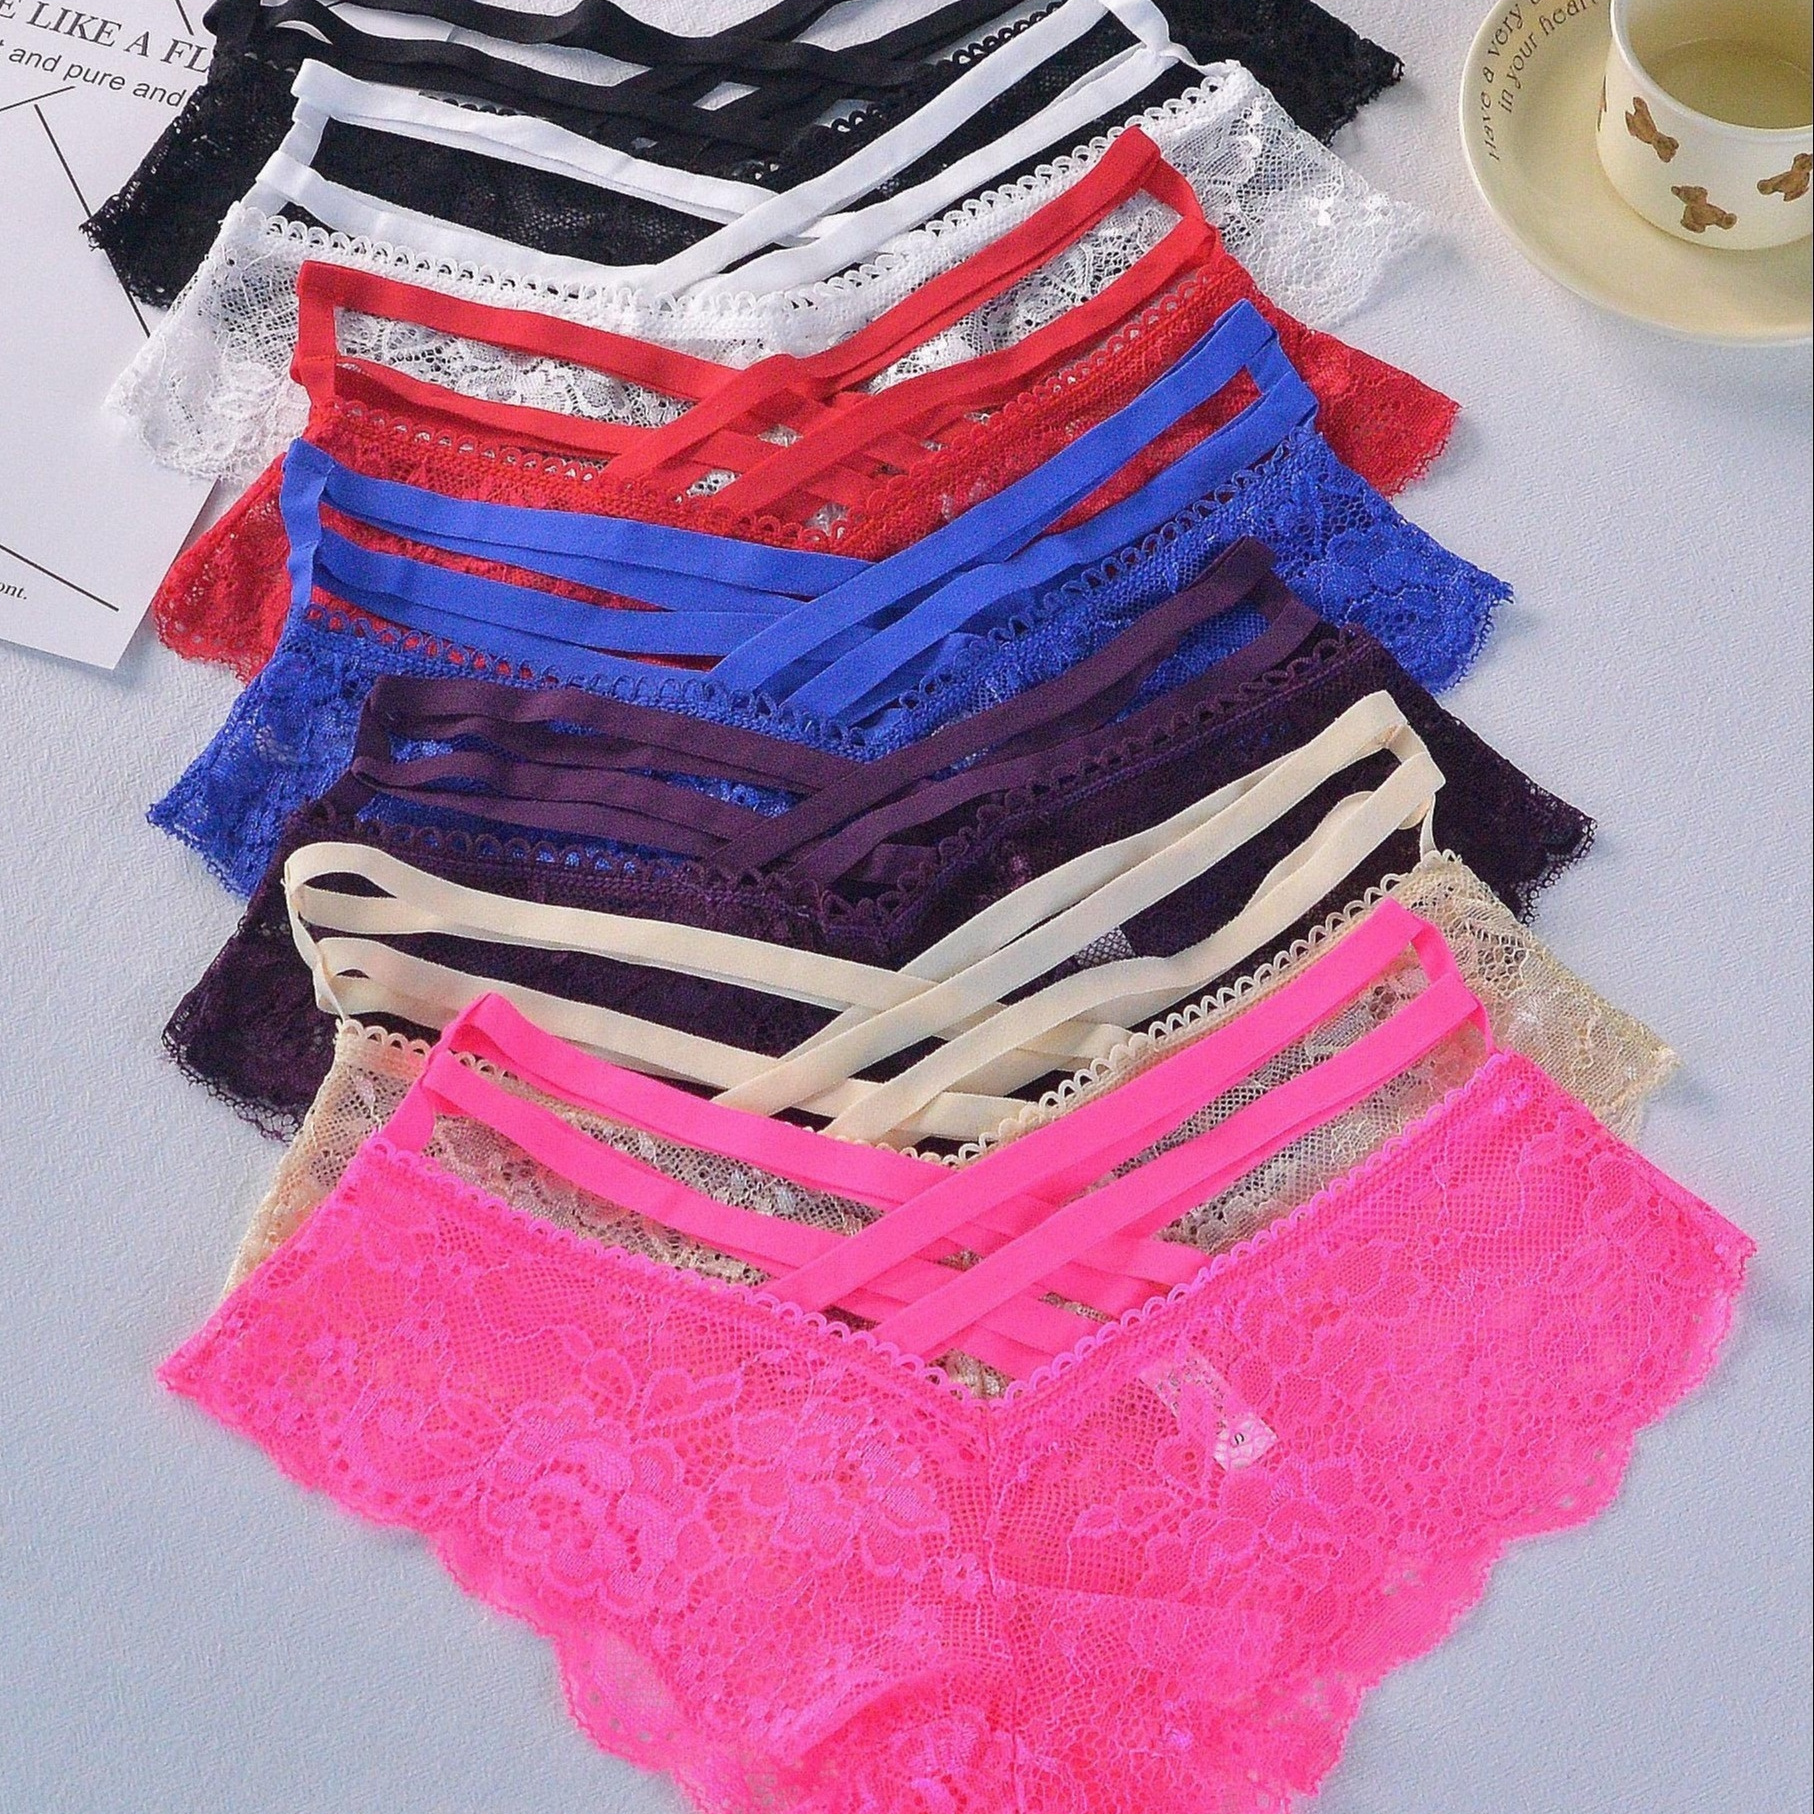 

7pcs Floral Lace Thongs, Soft & Comfy Cross Cut Out Intimates Panties, Women's Lingerie & Underwear